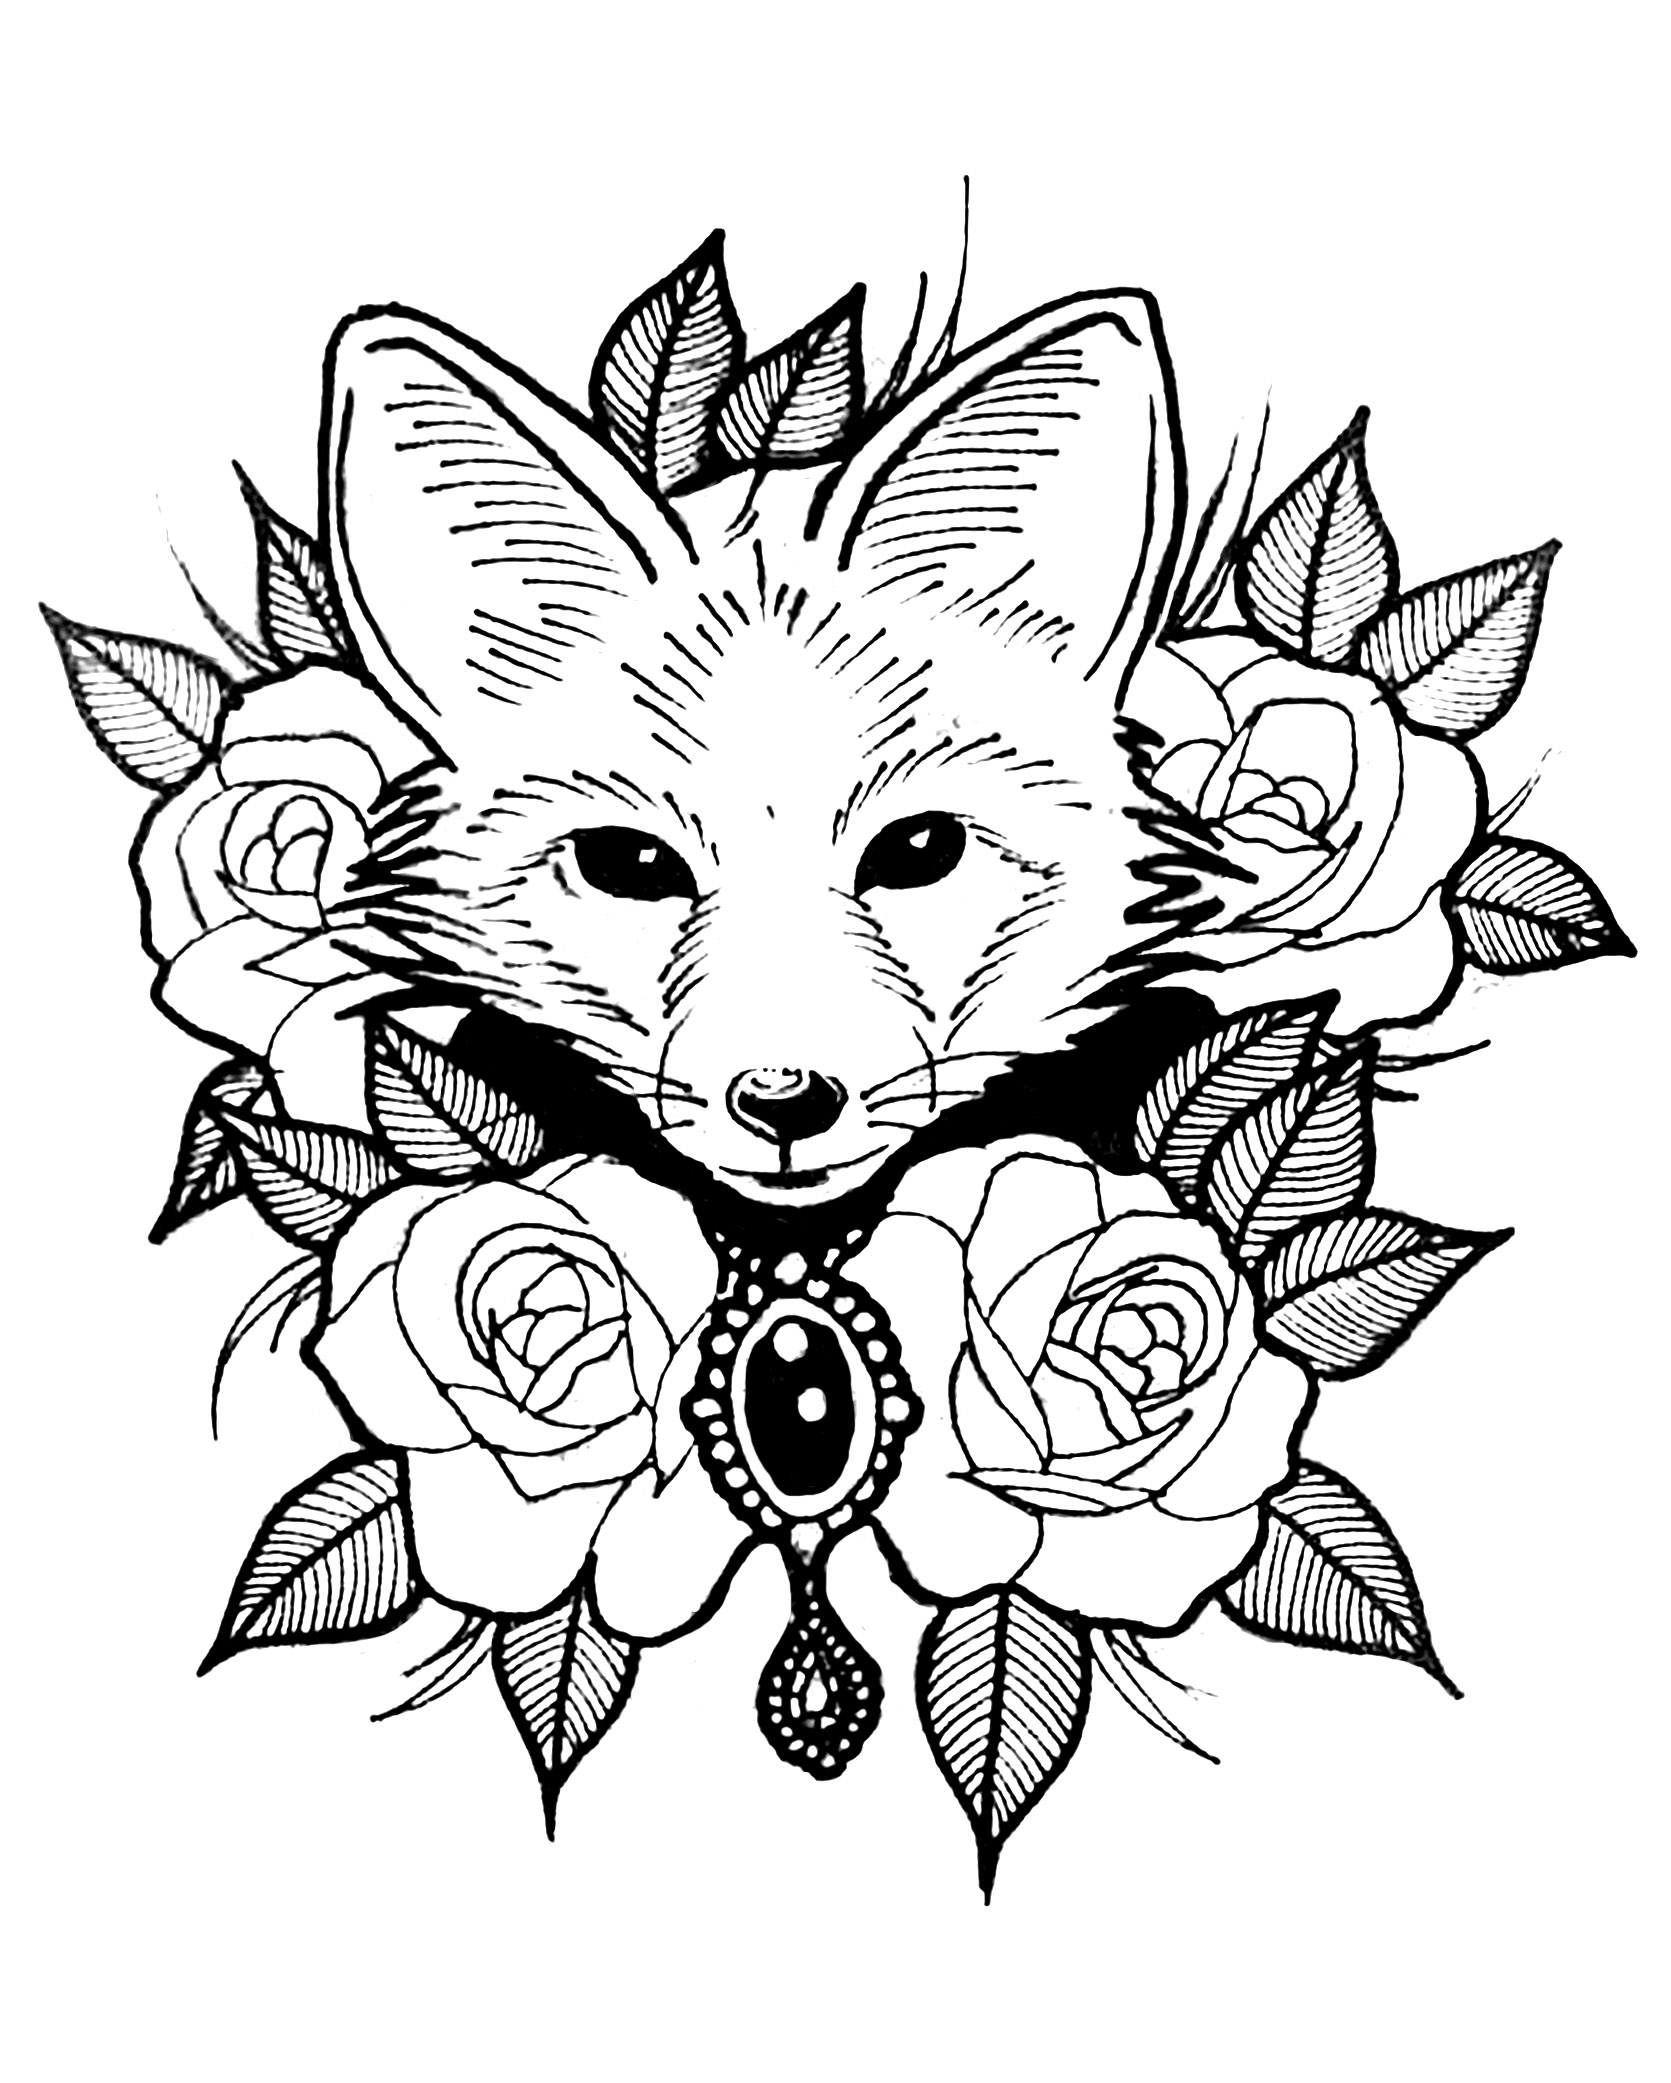 Zorro y rosas. Un precioso diseño de tatuaje que combina el mundo animal y el vegetal